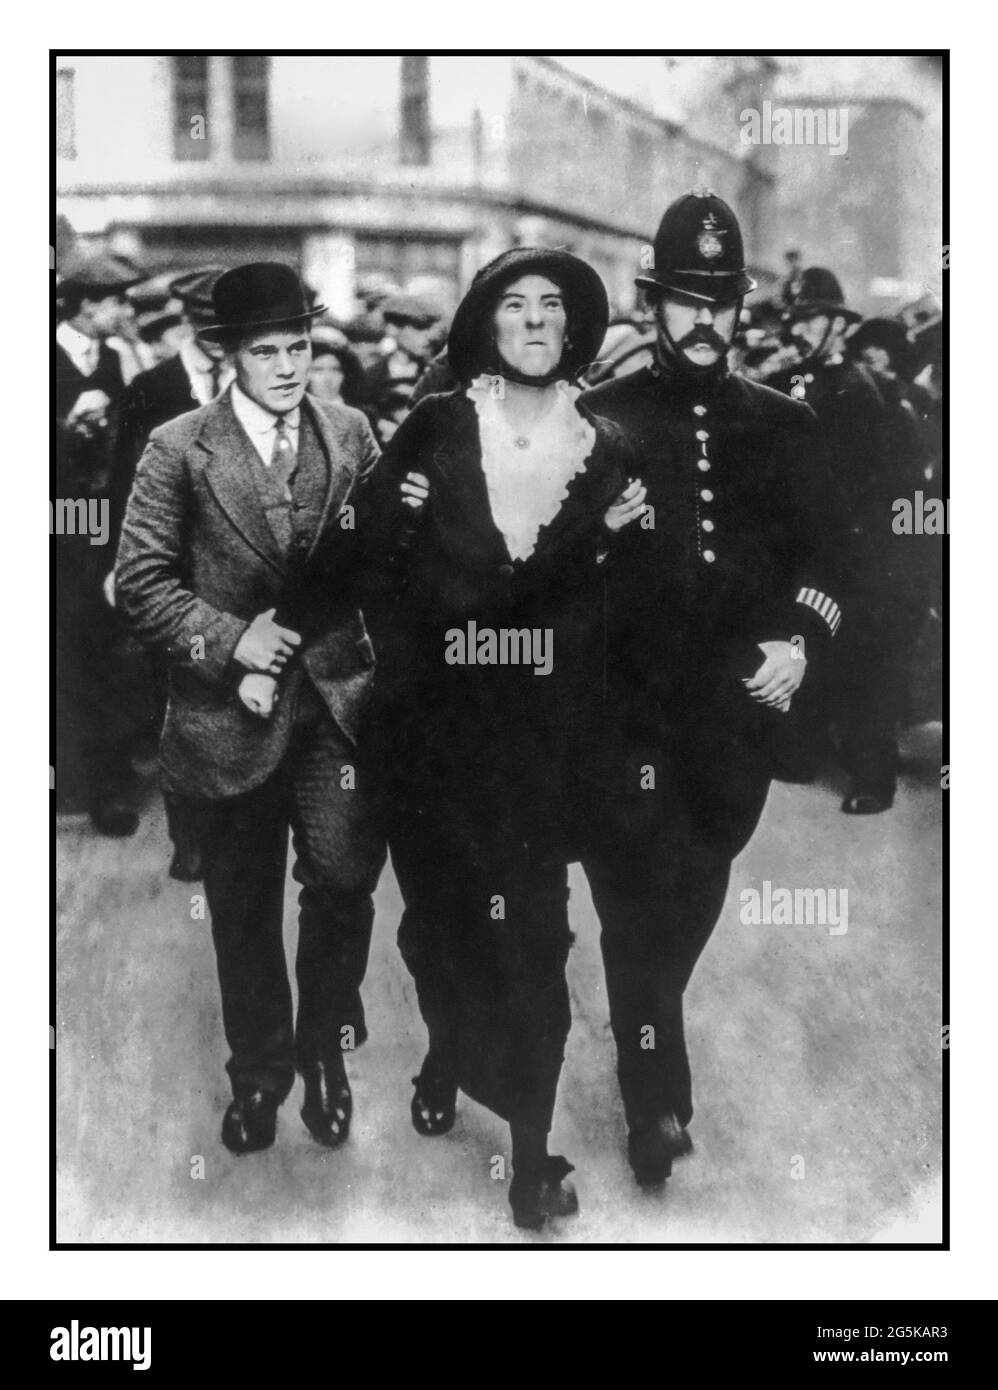 Arresto di Suffragette Londra 1913 Suffragettes - Londra - arresto di Suffragette - ottobre 1913 Riepilogo poliziotti e stendibiancheria da donna scorta. Creato / pubblicato il 1913 ottobre Foto Stock